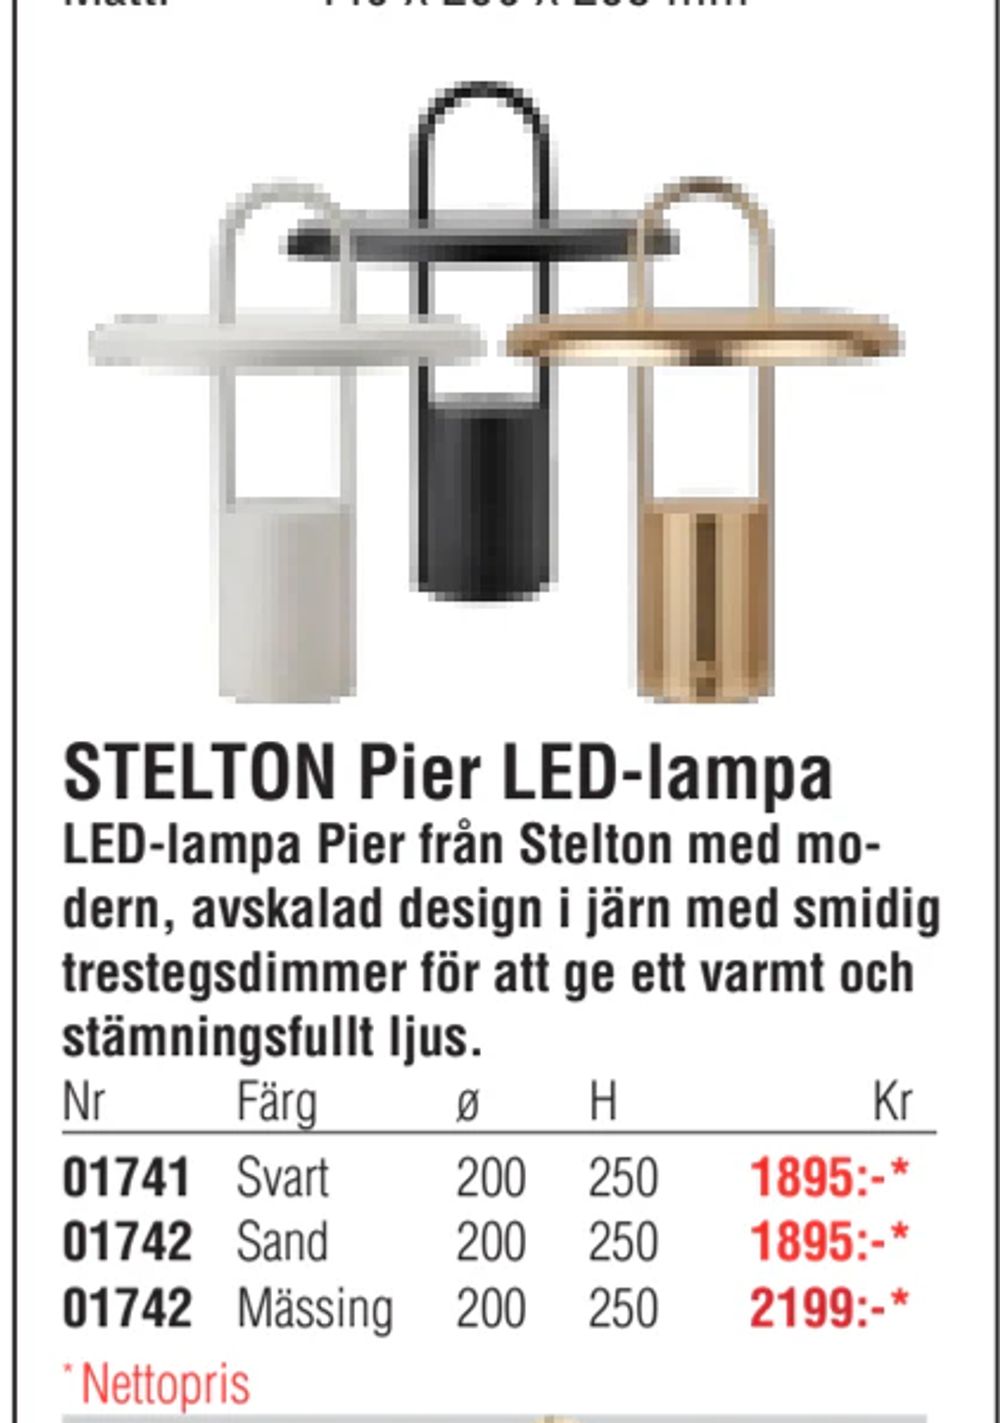 Erbjudanden på STELTON Pier LED-lampa från Erlandsons Brygga för 1 895 kr